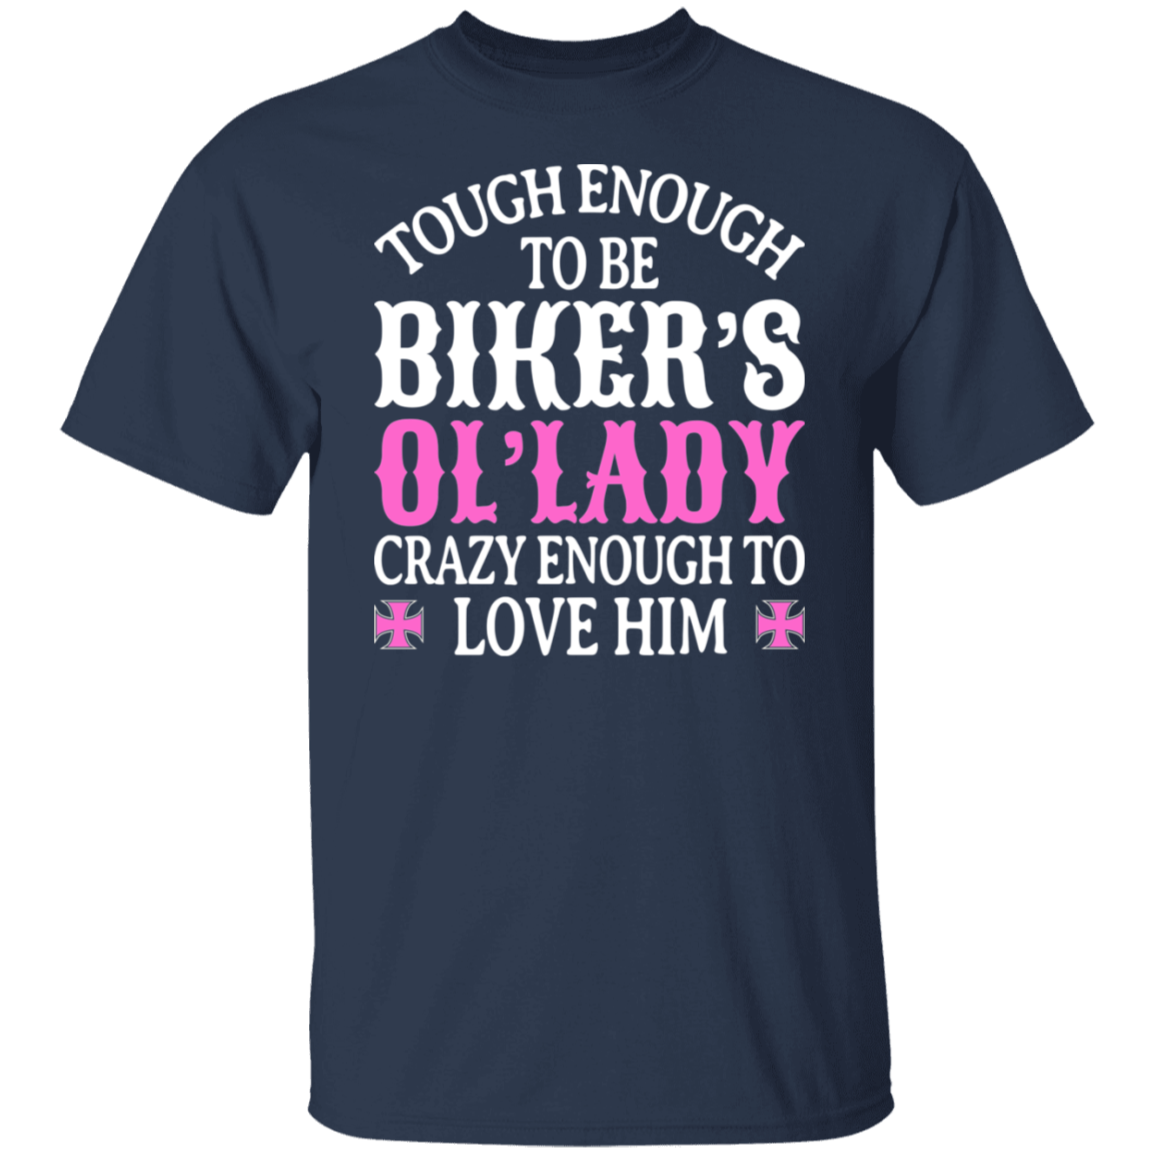 Tough enough to be biker's 'ol lady Shirt